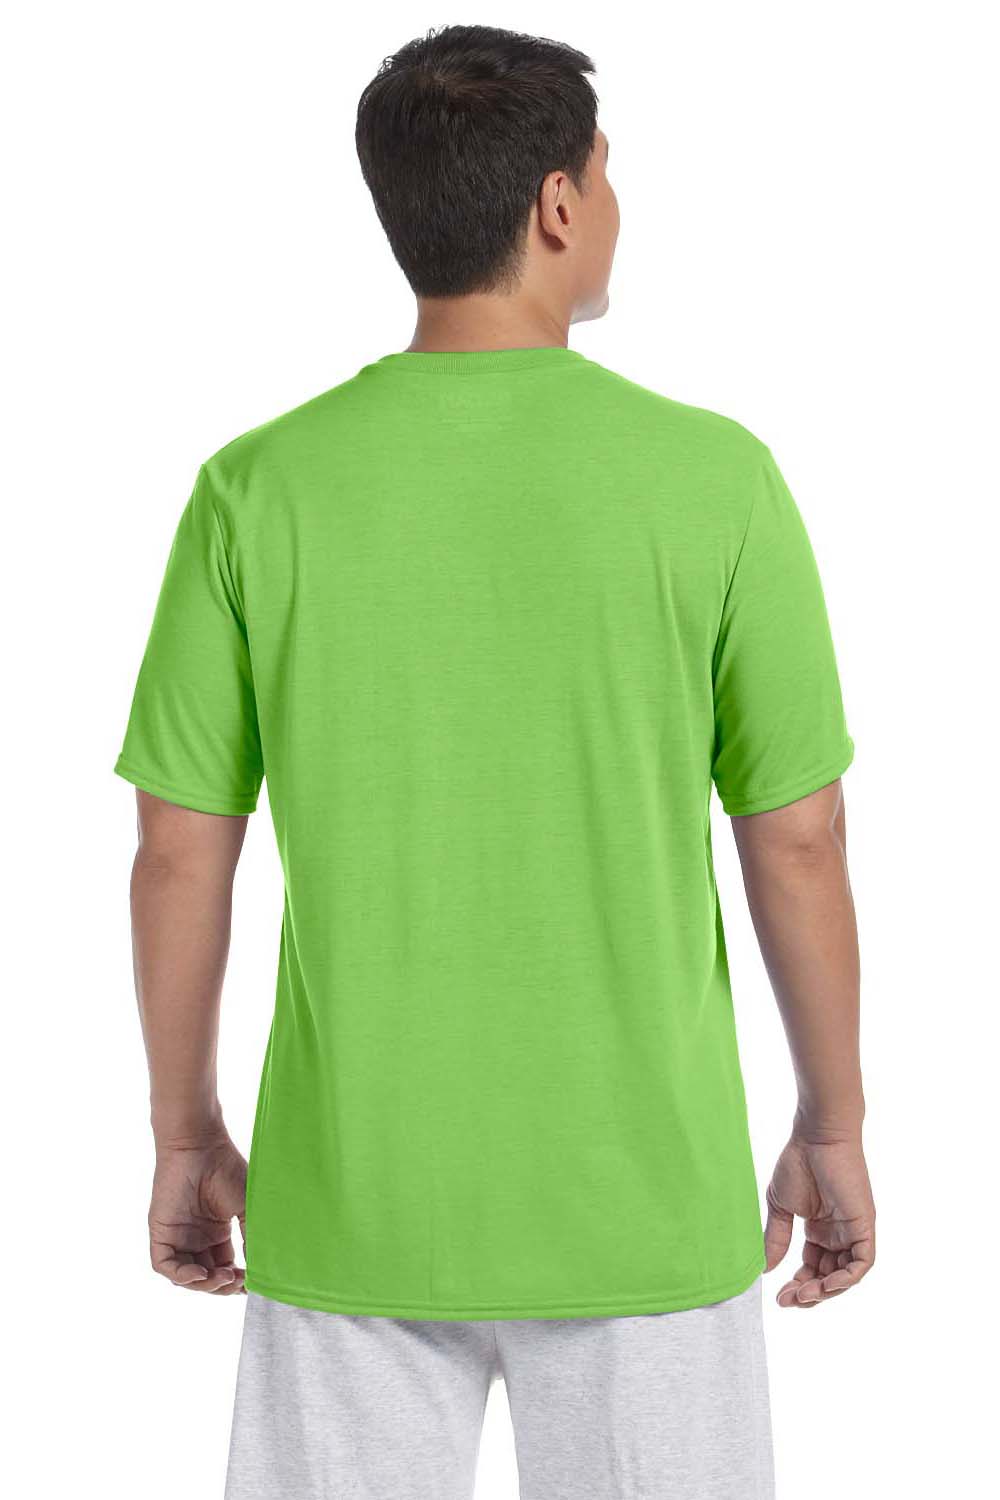 Gildan G420 Mens Performance Jersey Moisture Wicking Short Sleeve Crewneck T-Shirt Lime Green Back